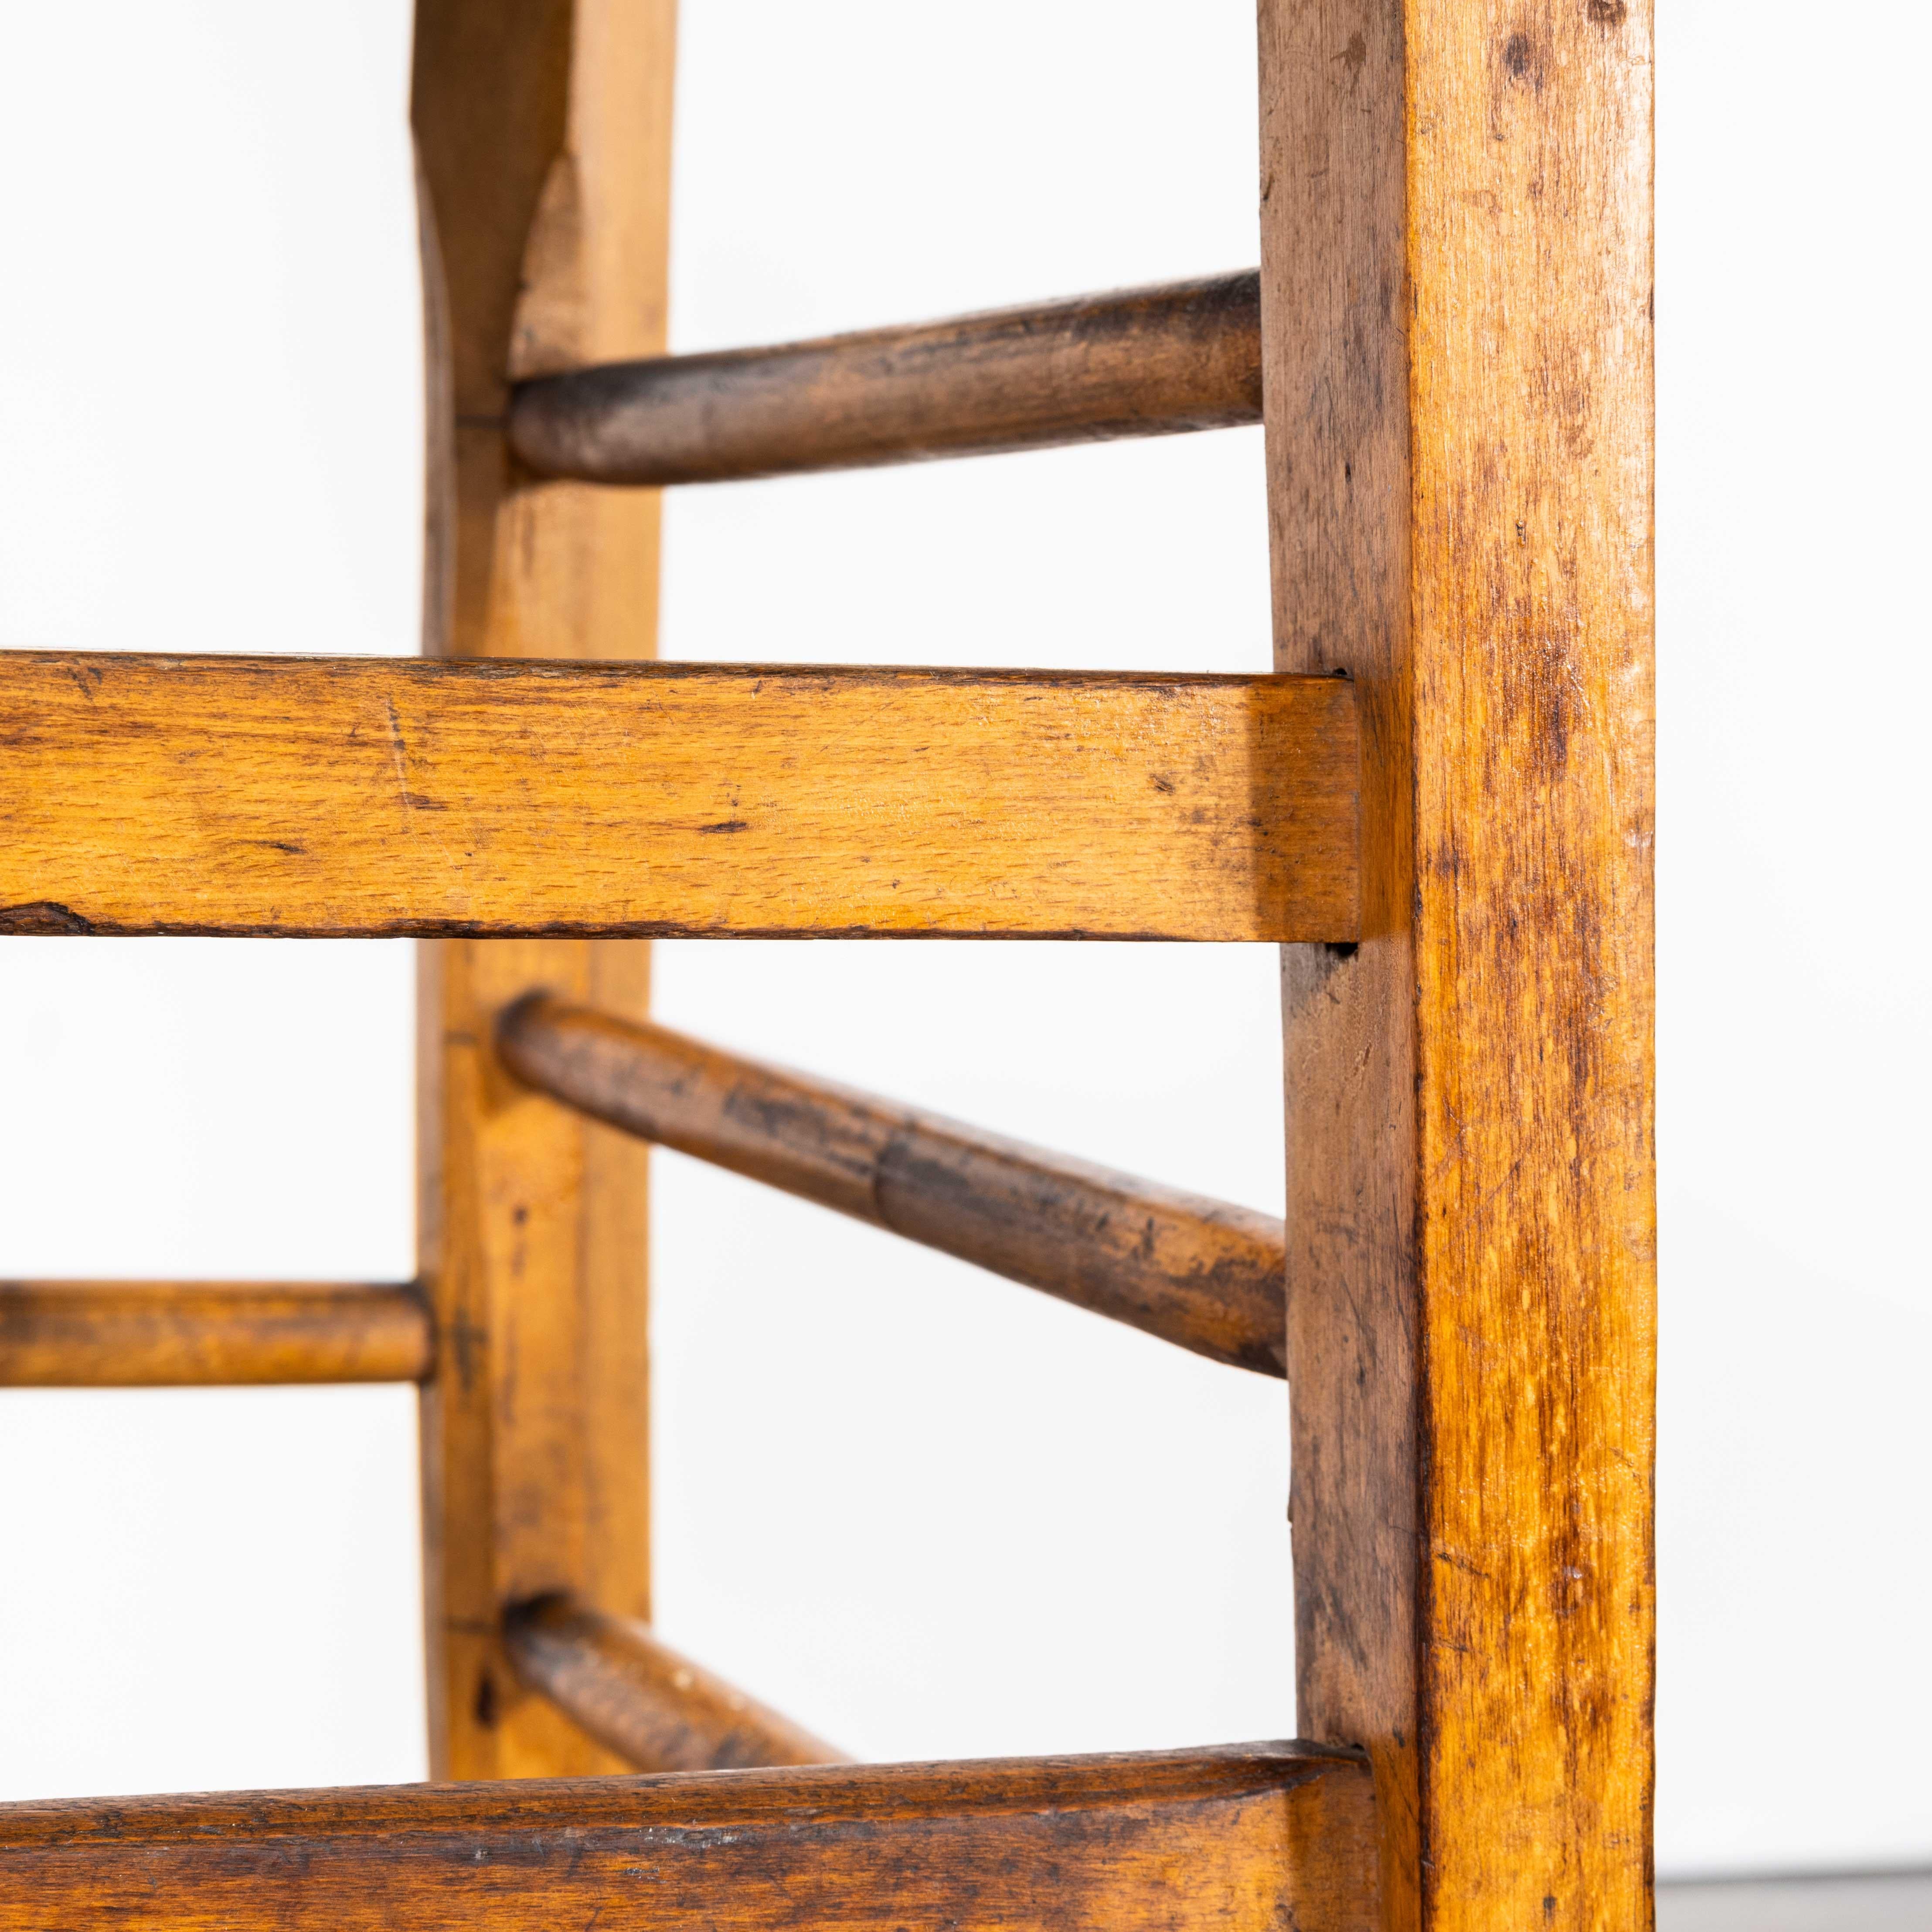 Chaise de salle à manger en bois blond Luterma des années 1950 - Chaise de bar
Chaise de salle à manger en bois blond Luterma des années 1950 - Chaise de bar. Le procédé de cintrage du hêtre à la vapeur pour créer des chaises élégantes a été